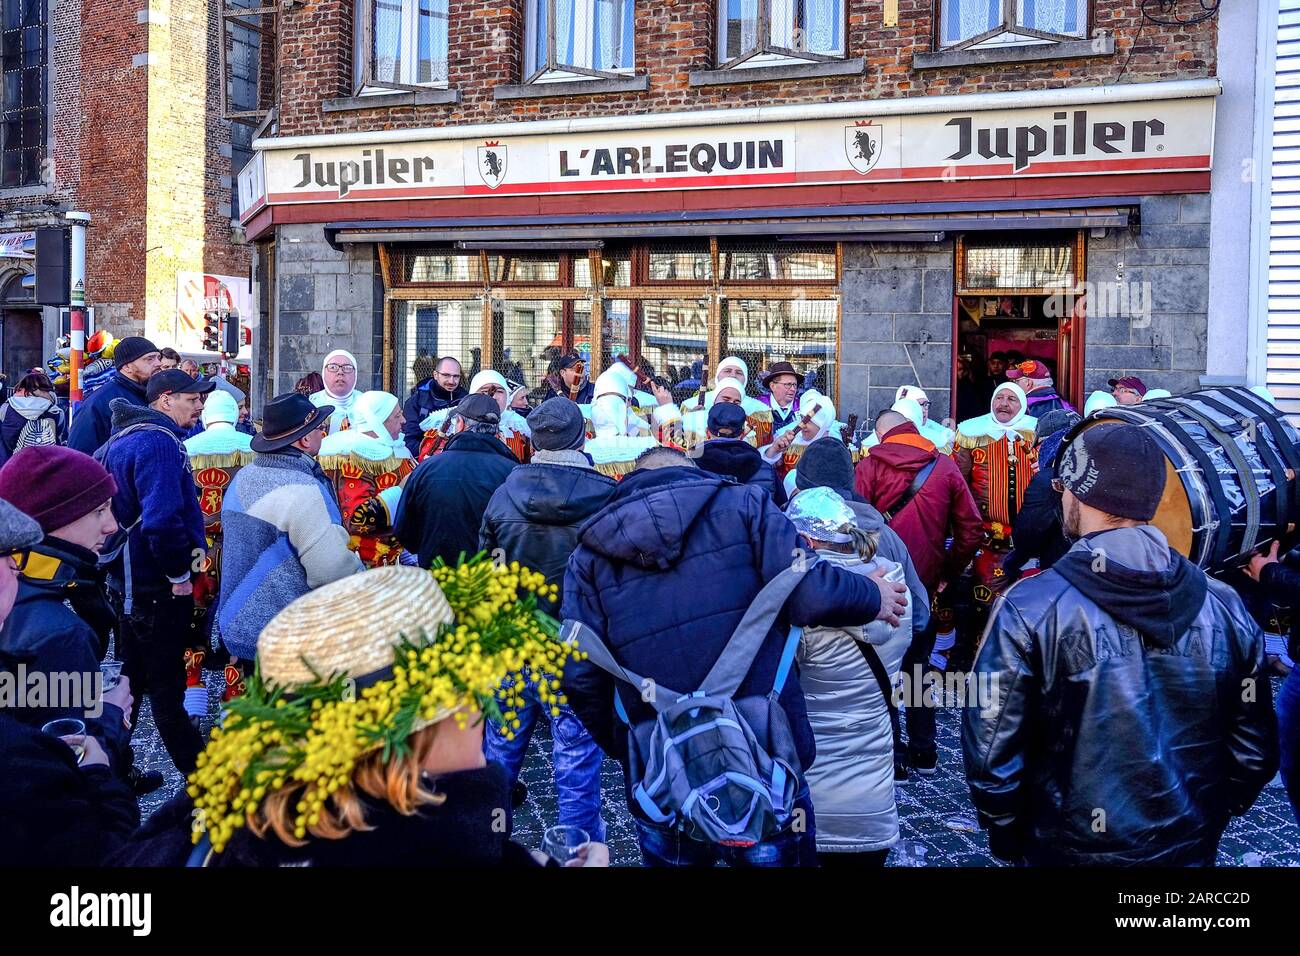 BINCHE, BELGIUM - Feb 18, 2018: Rassemblement de Gilles de Binche avec public en avant-plan montrant une participante portant un chapeau orné de mimos Stock Photo